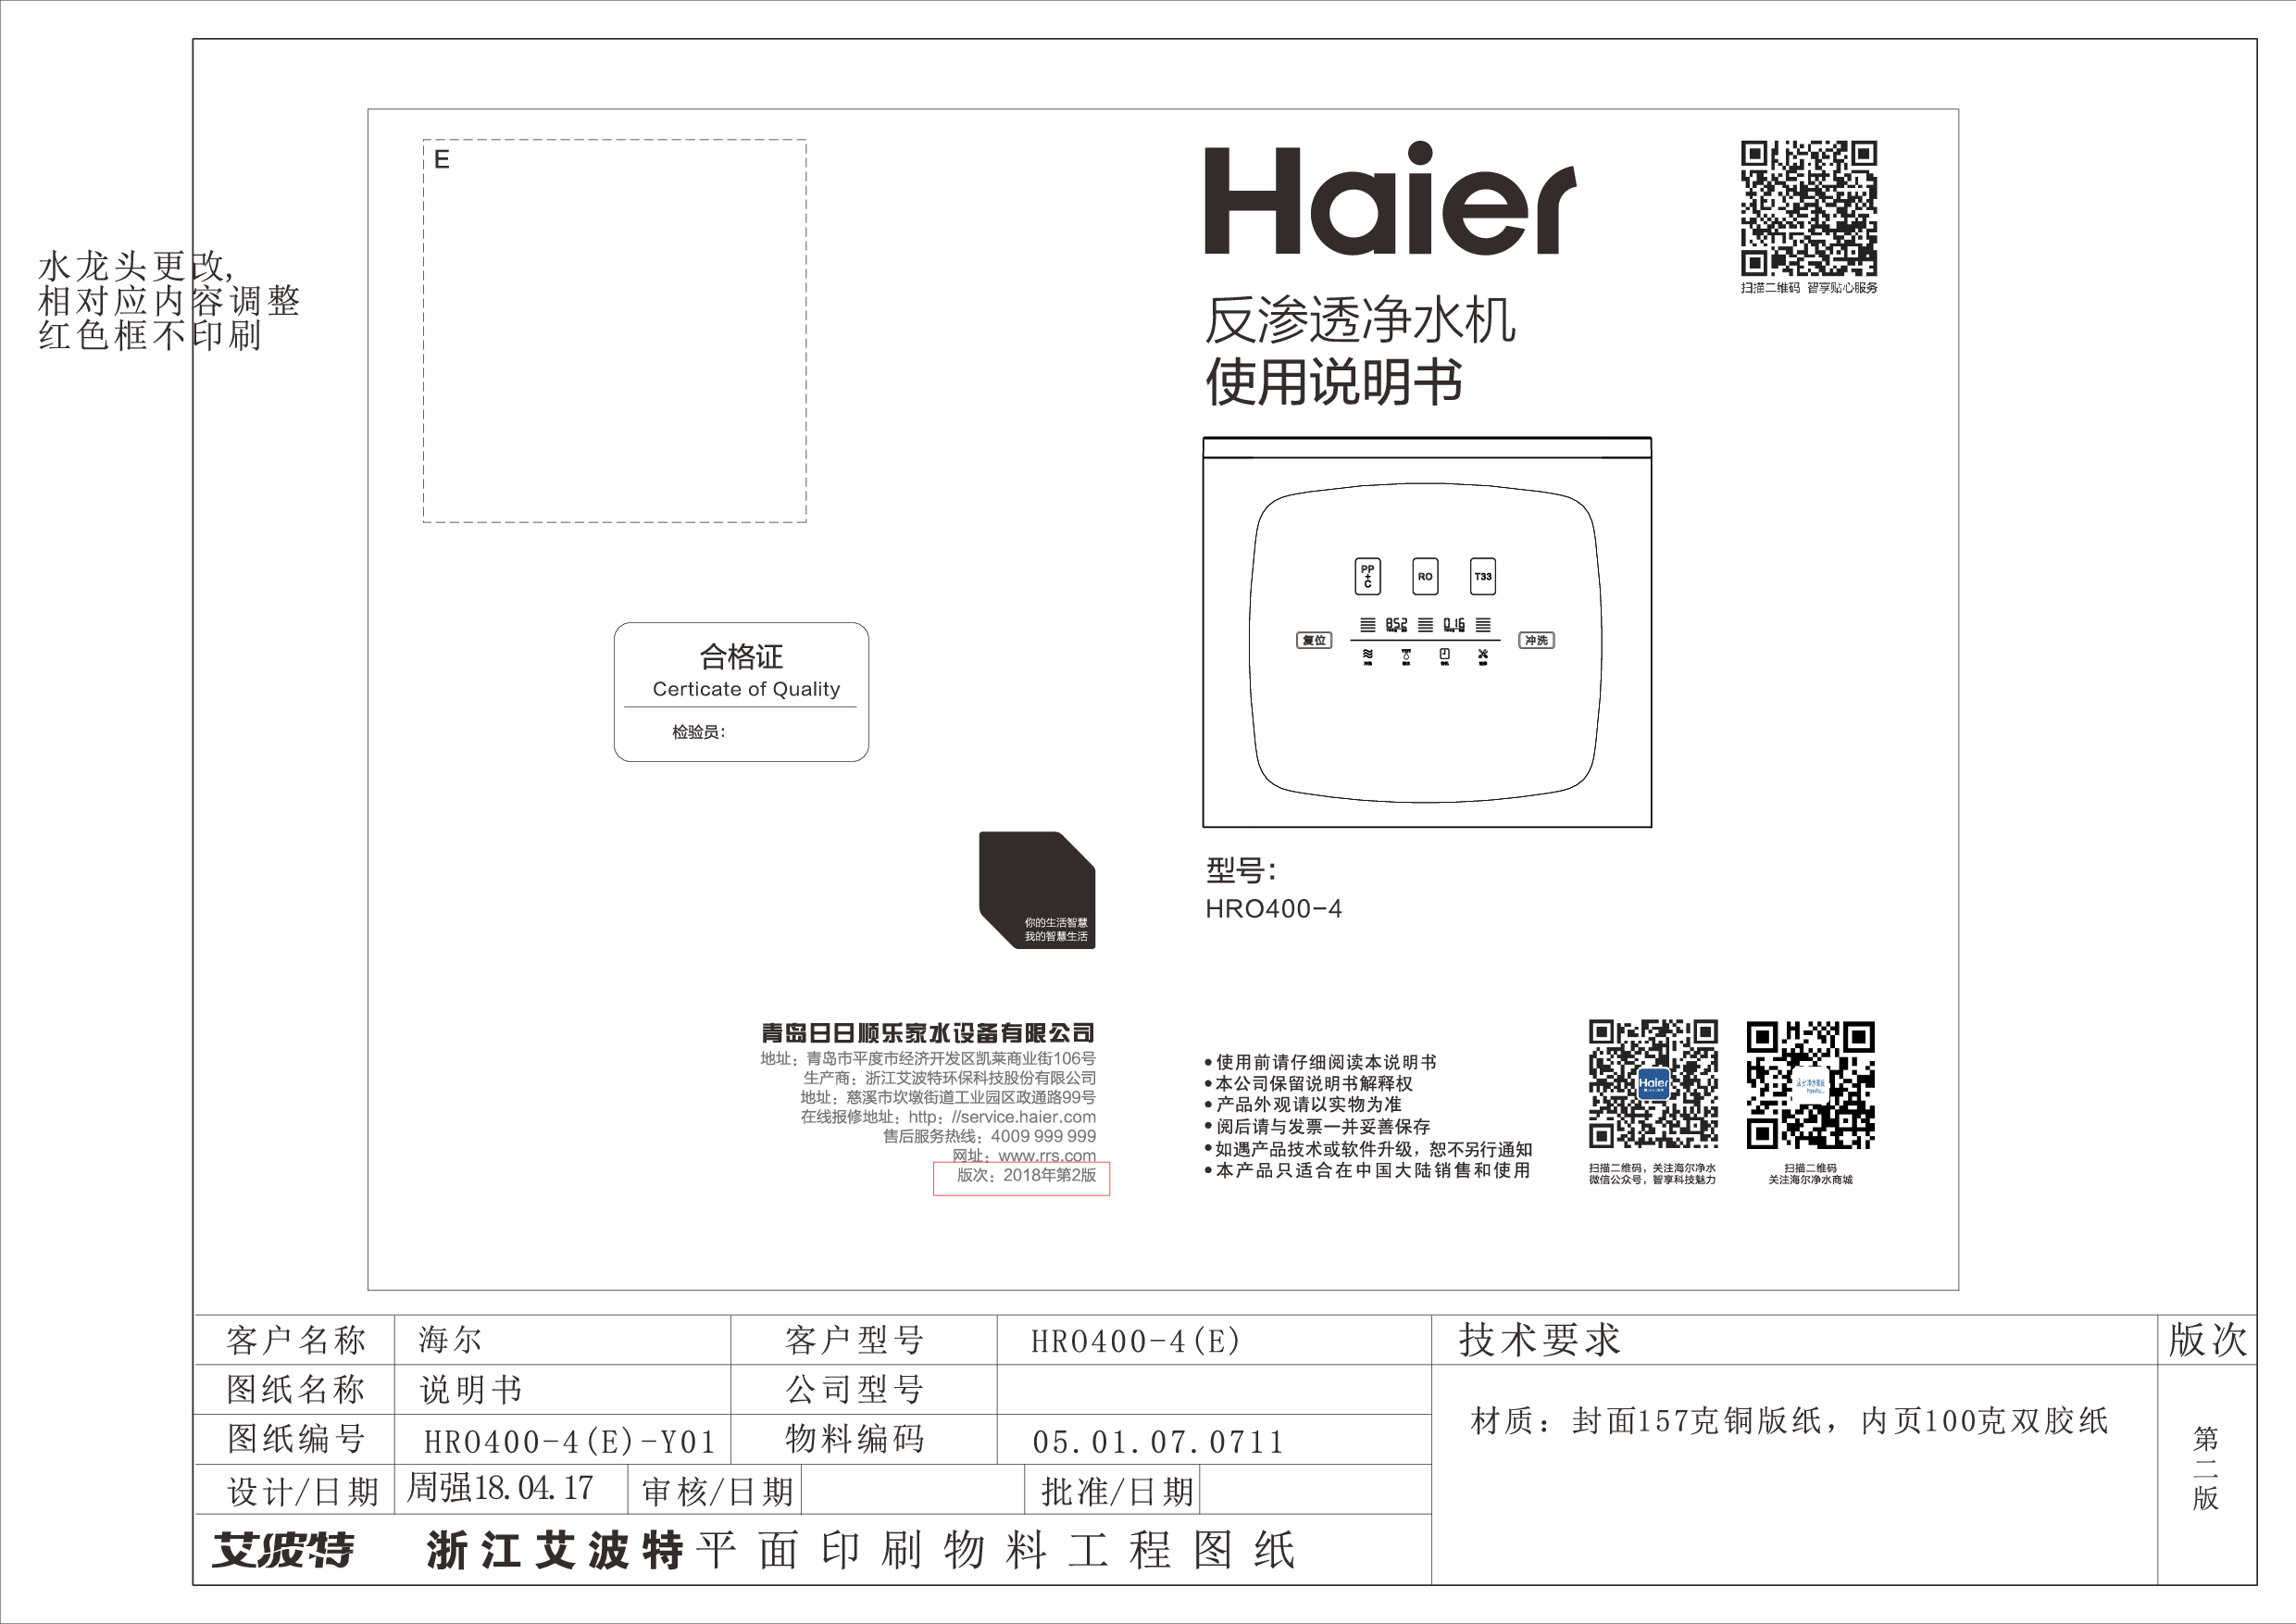 海尔 Haier HRO400-4E 使用说明书 封面